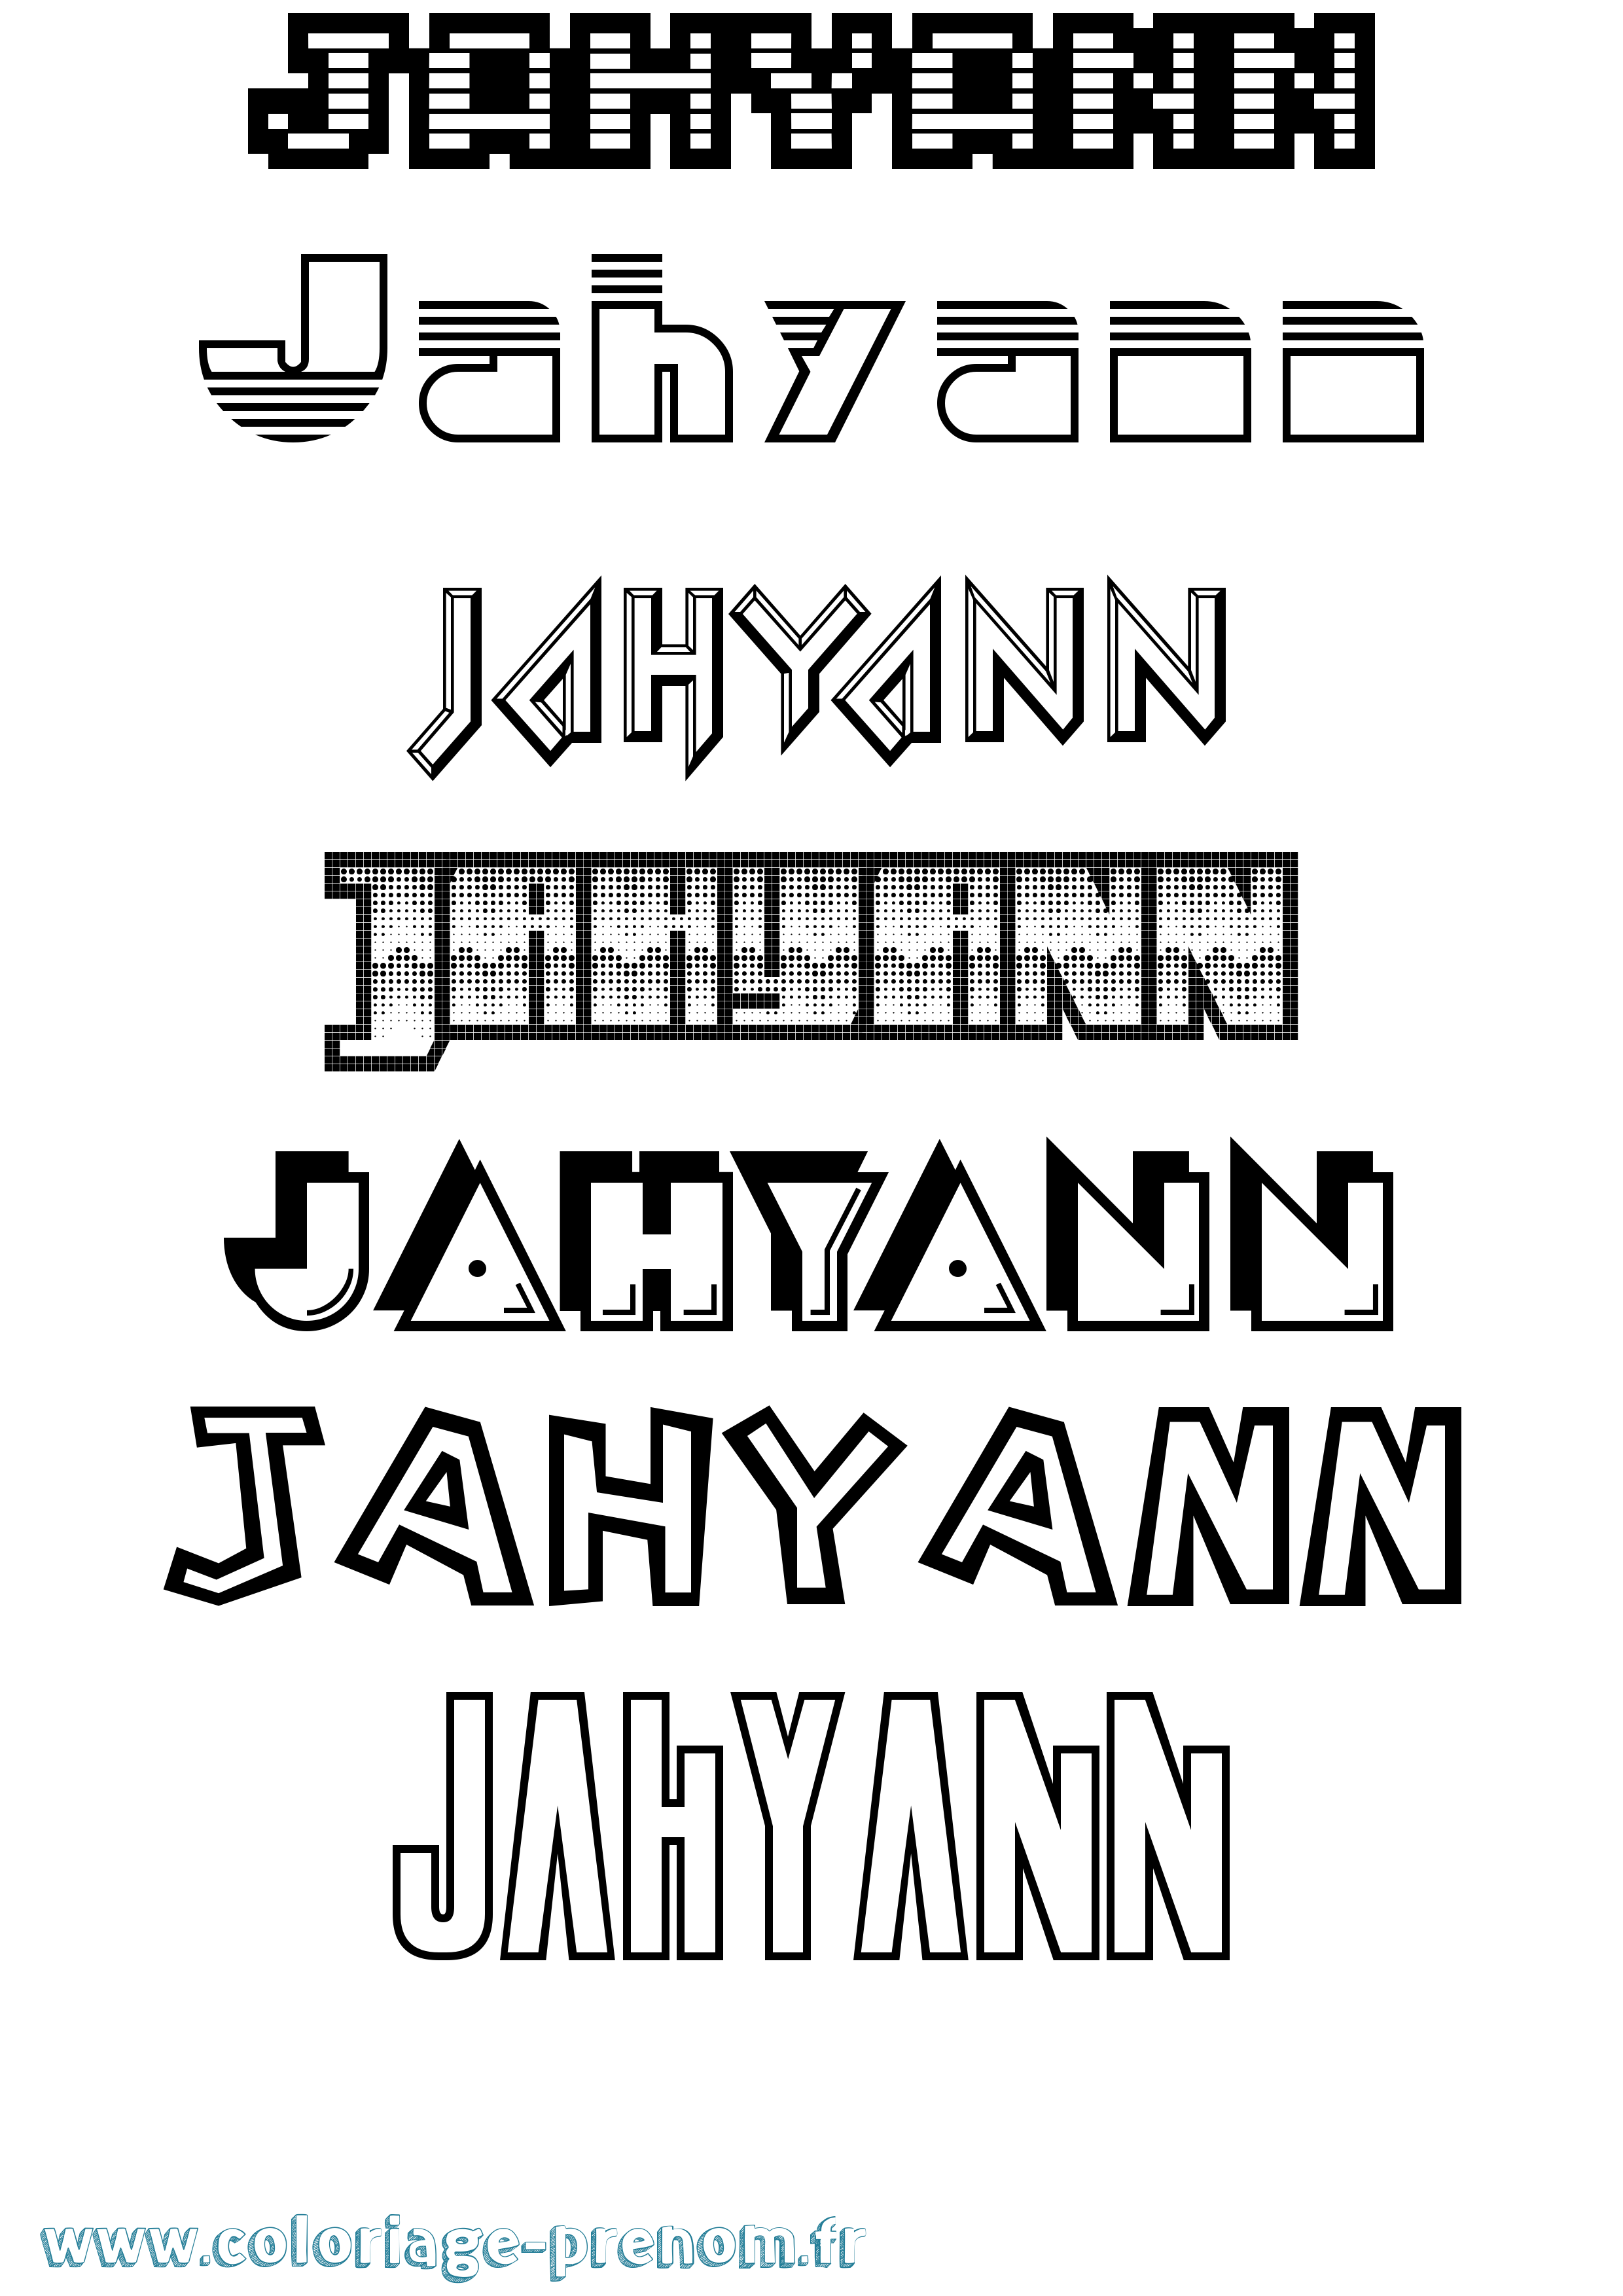 Coloriage prénom Jahyann Jeux Vidéos